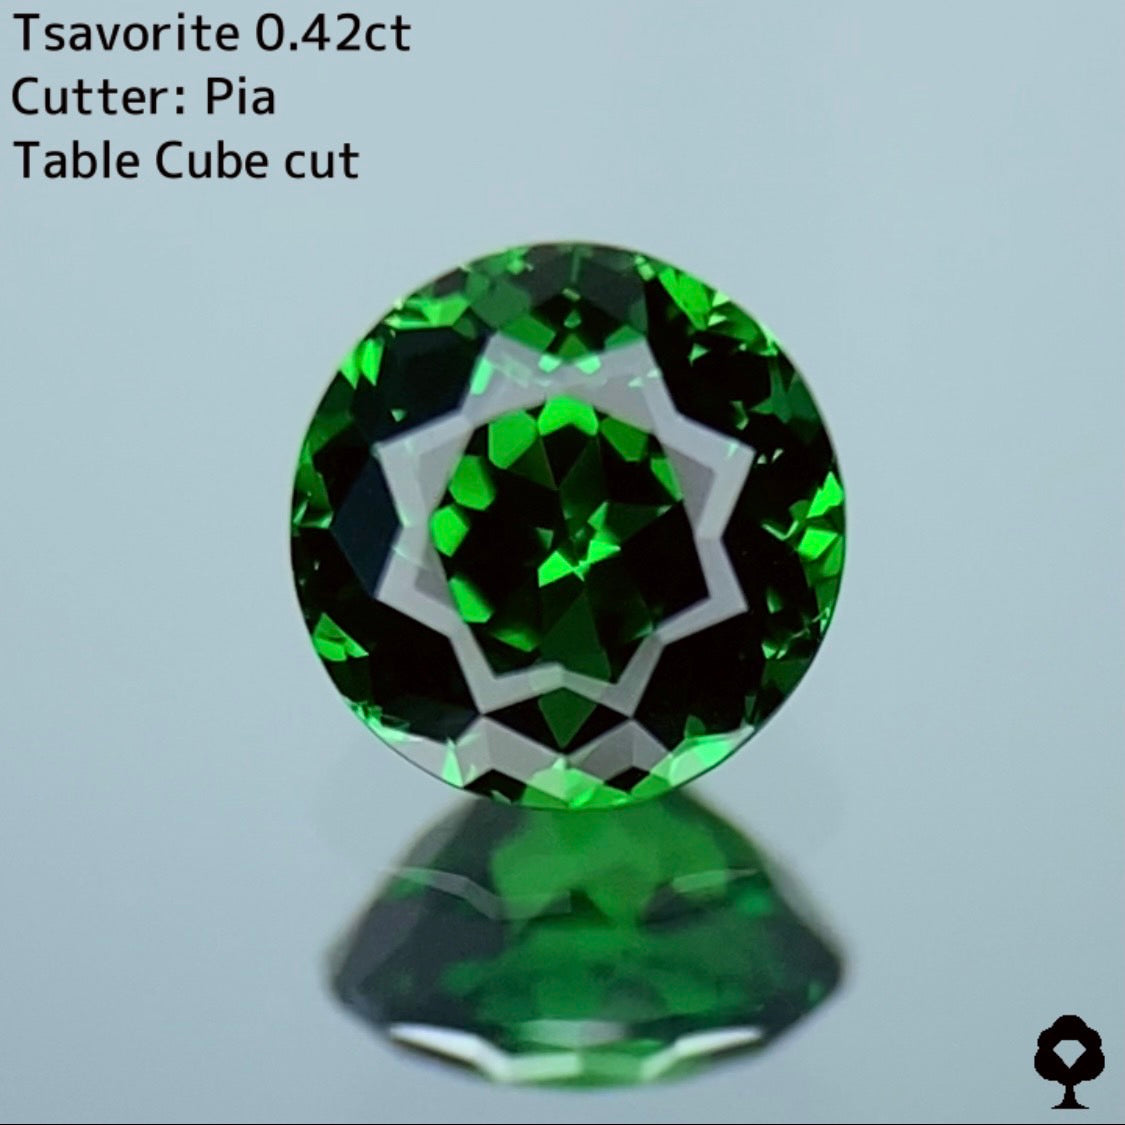 お客さま専用【Pia Table Cube Cut】ピアッちゃんの初テーブルキューブ作品★ツァボライト 0.42ct